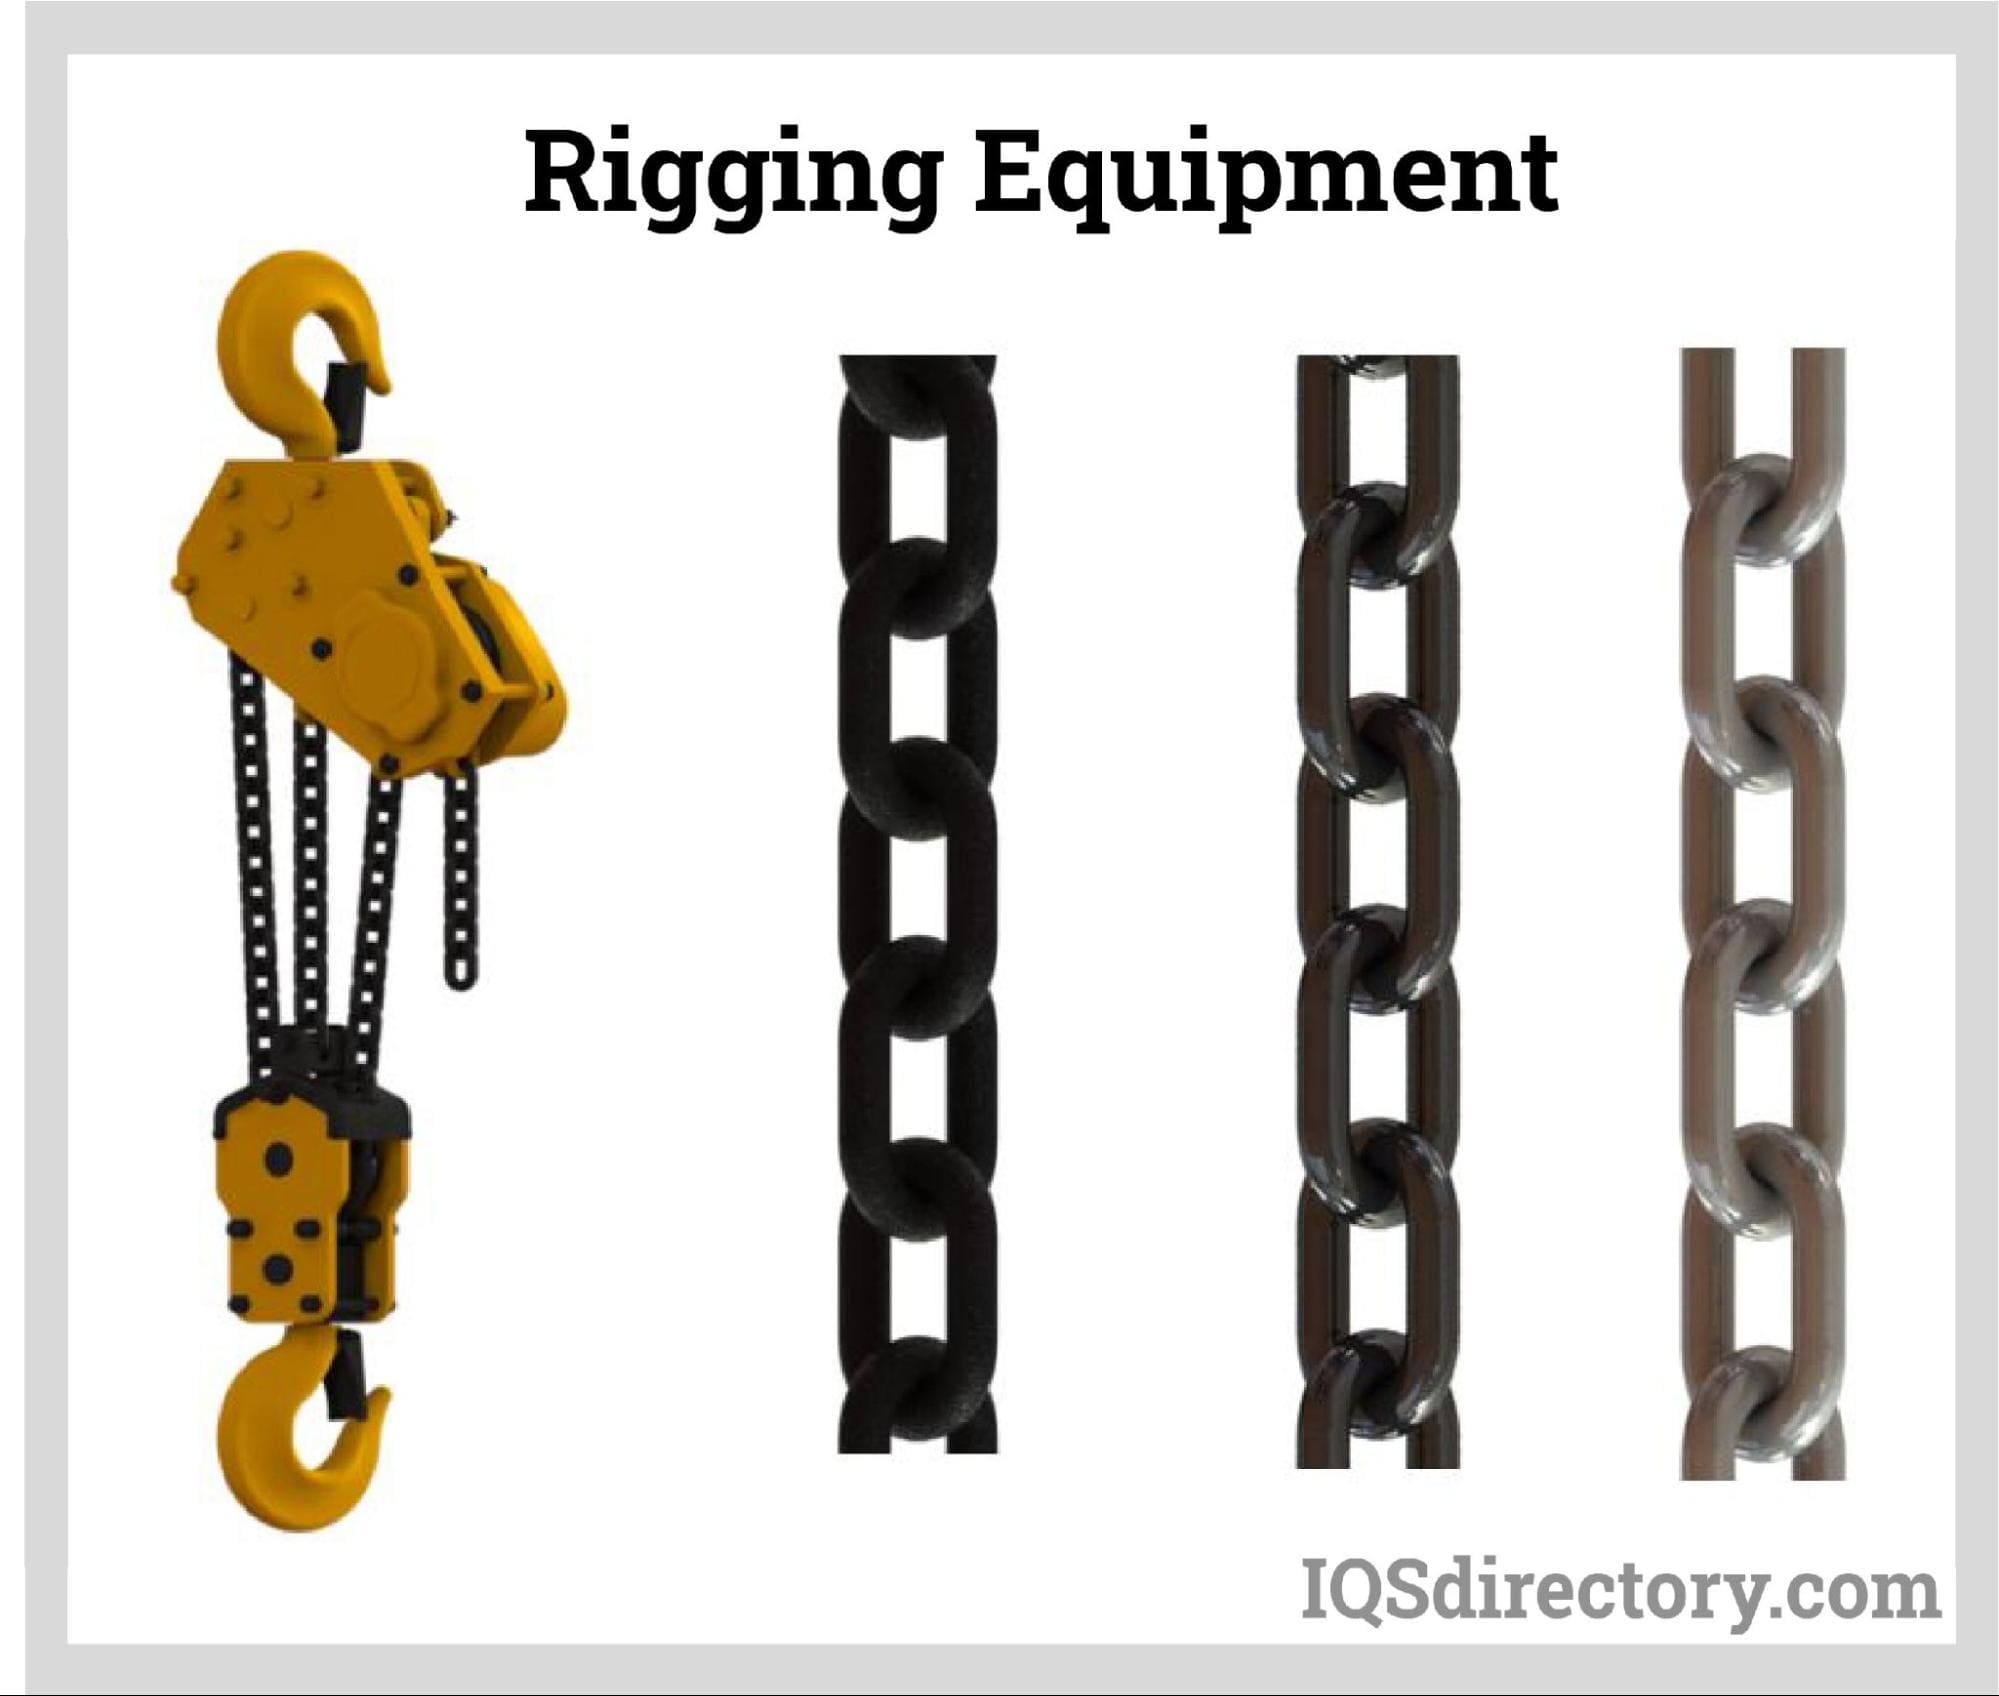 Rigging Equipment